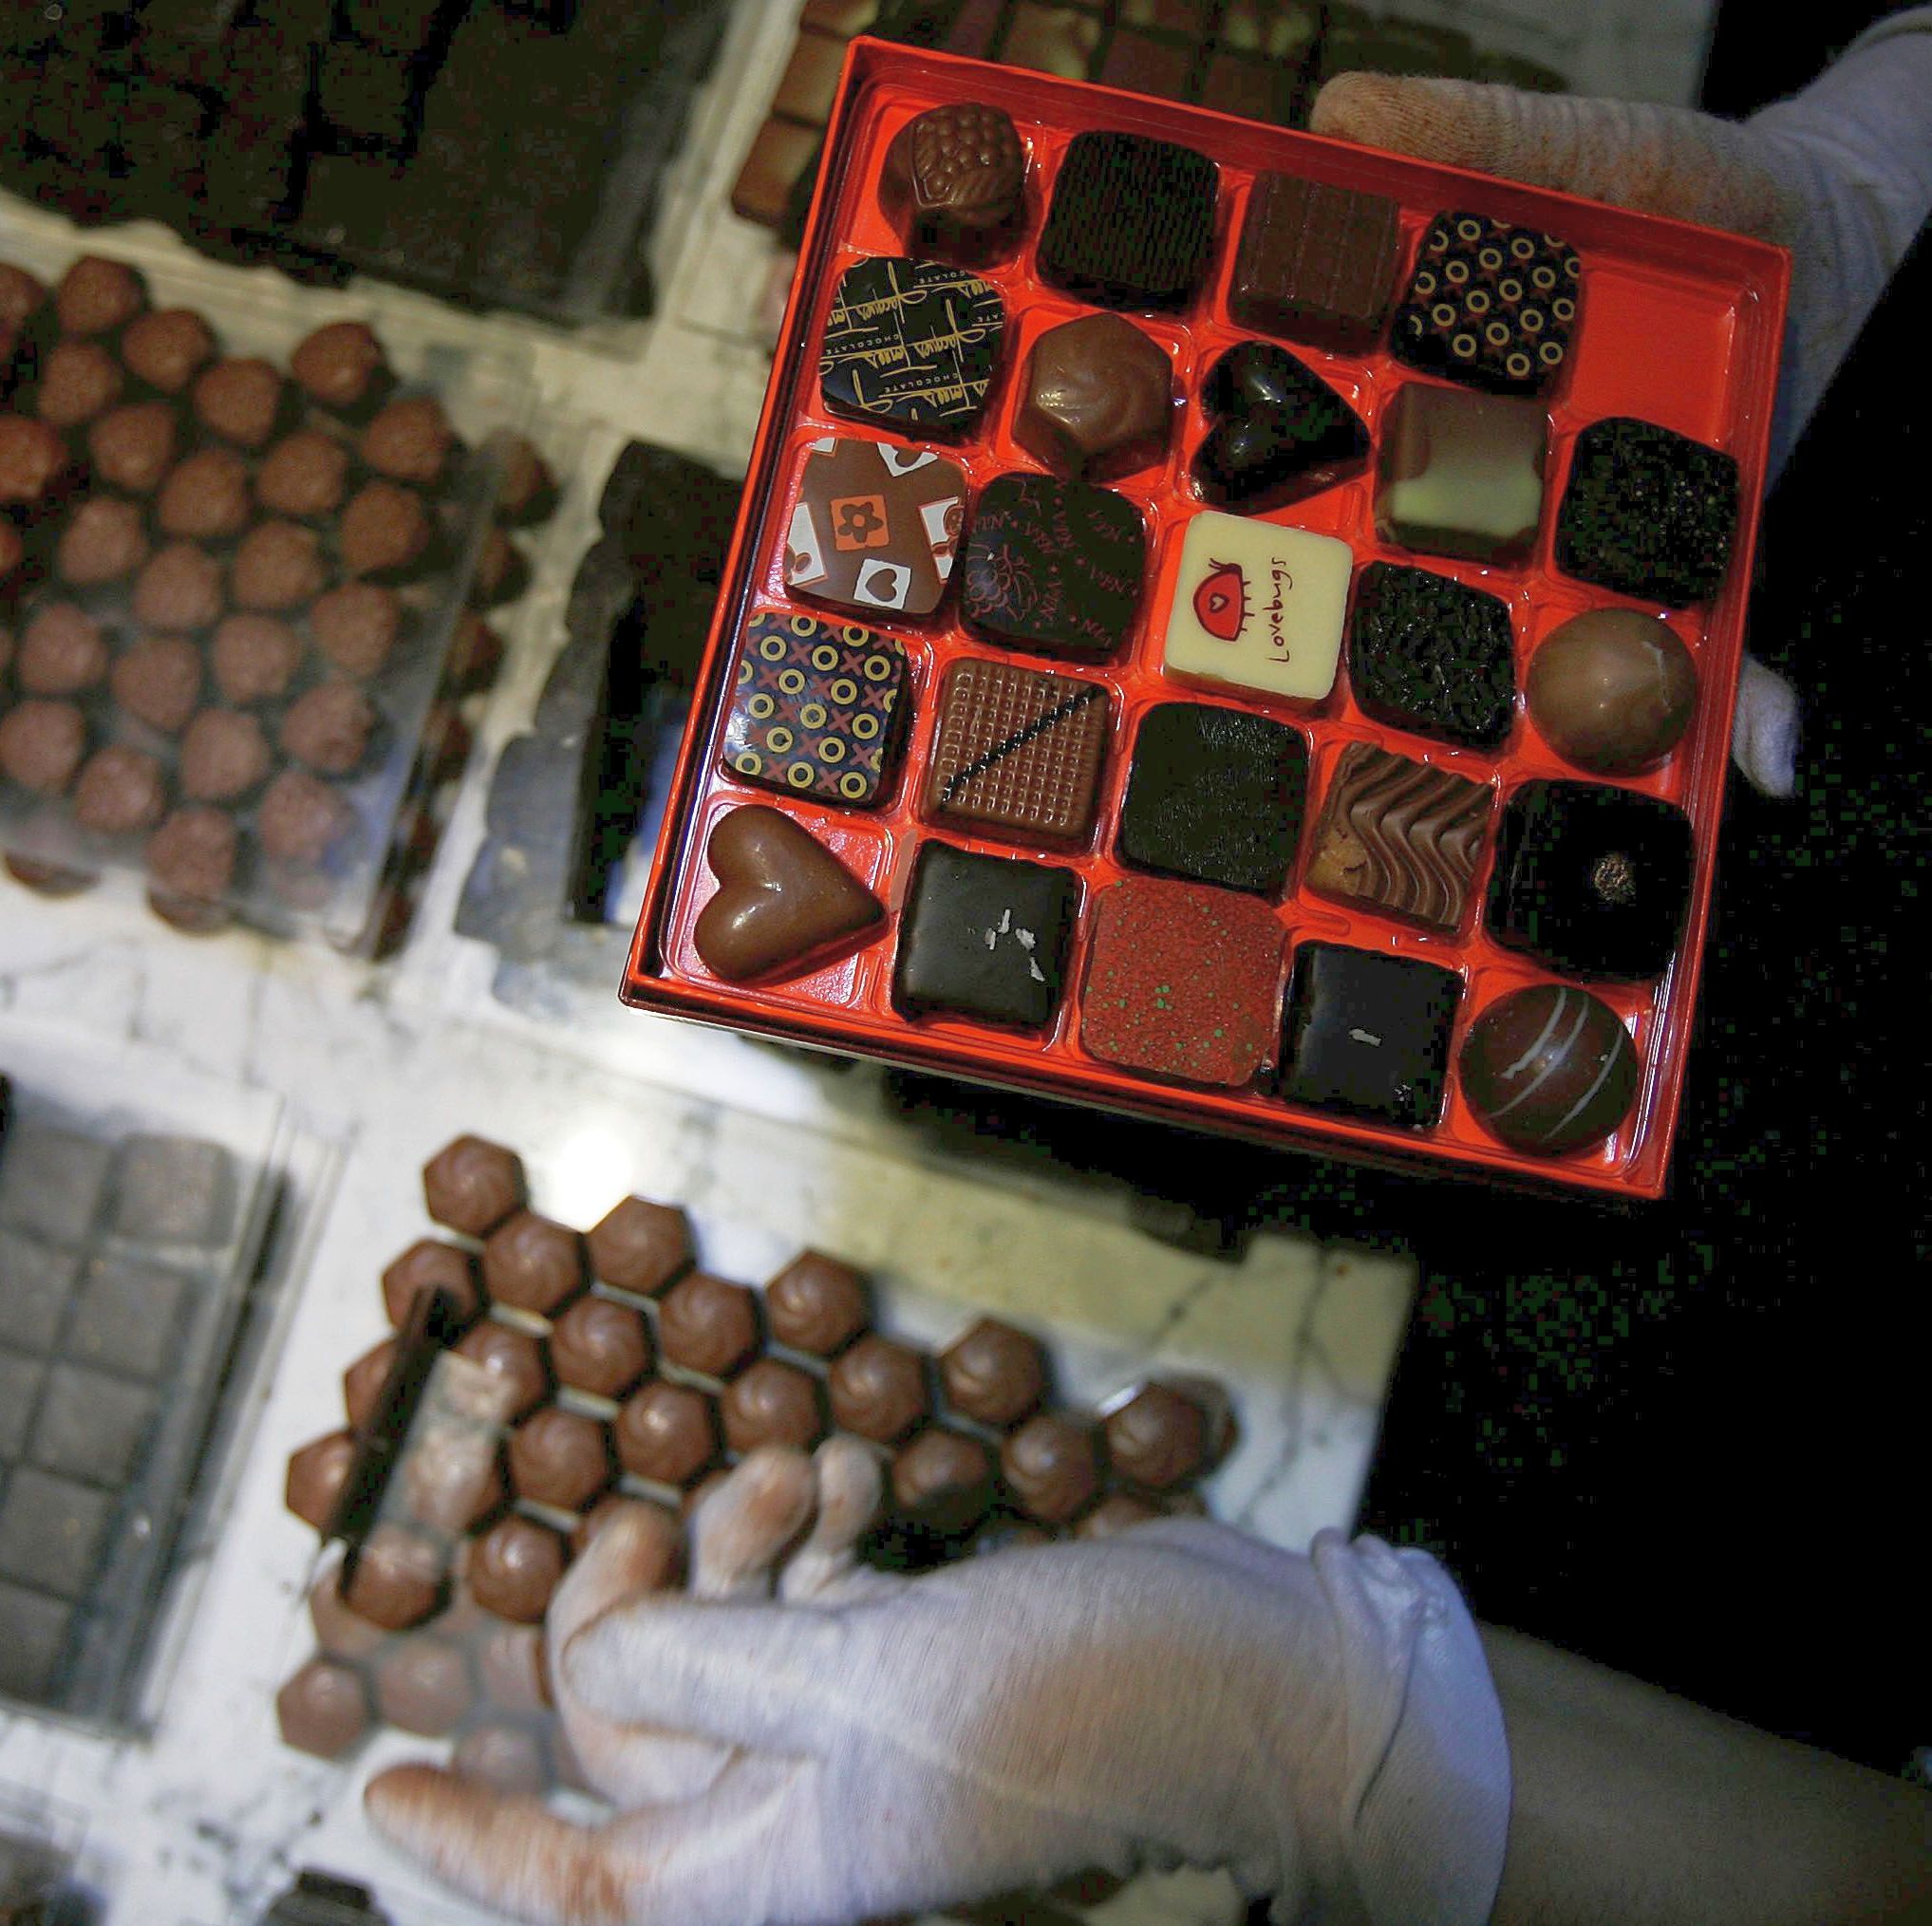 Шоколадови бонбони са откраднати от микробус